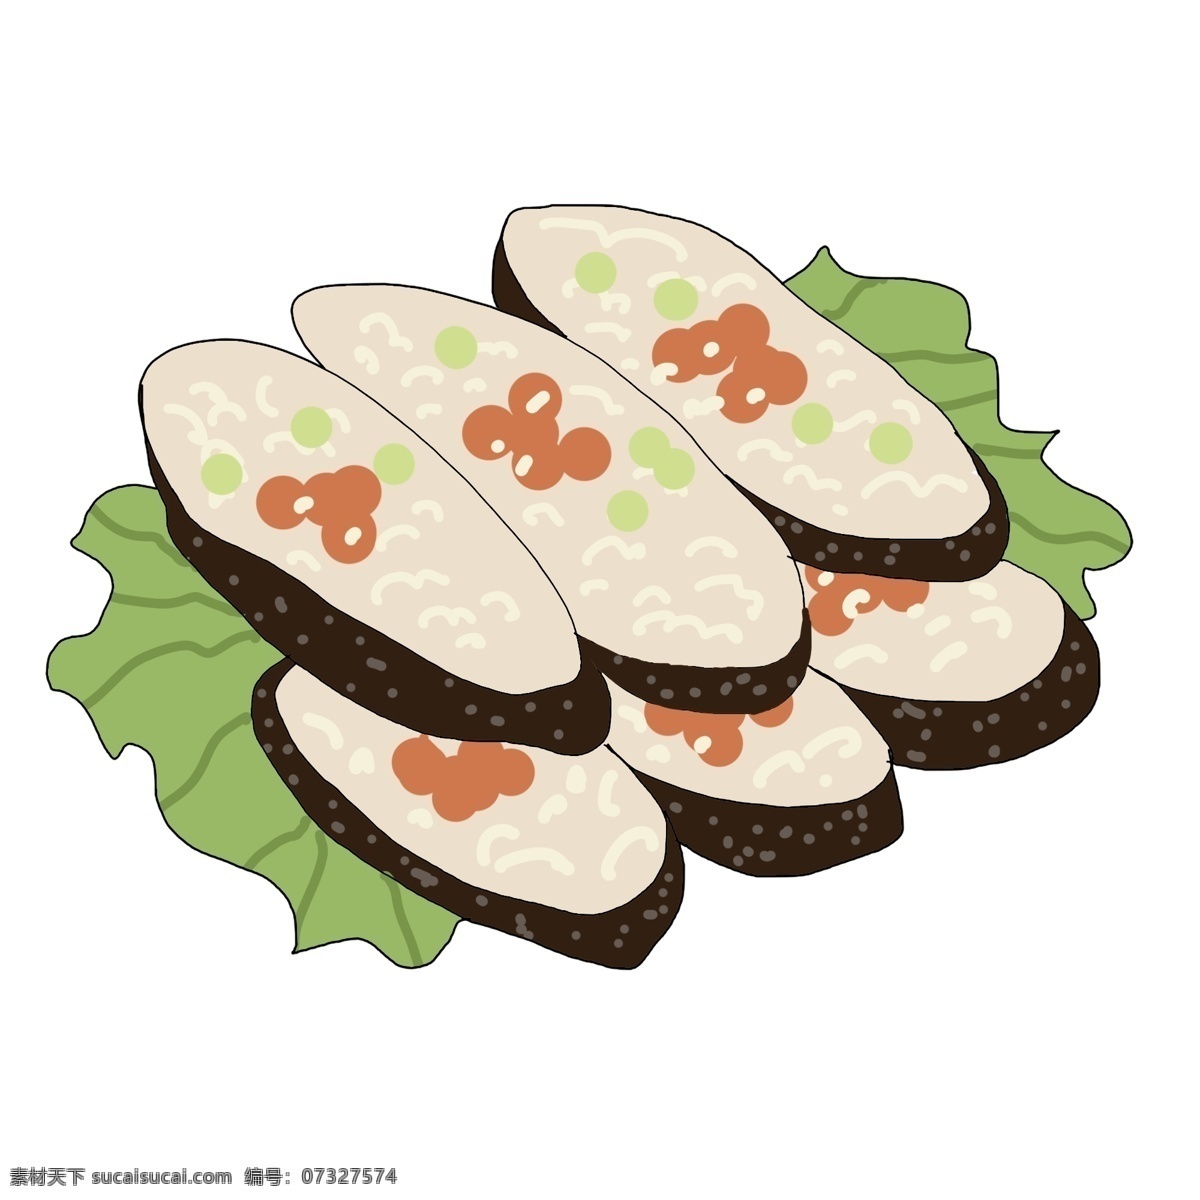 特色 寿司 美食 插图 小吃